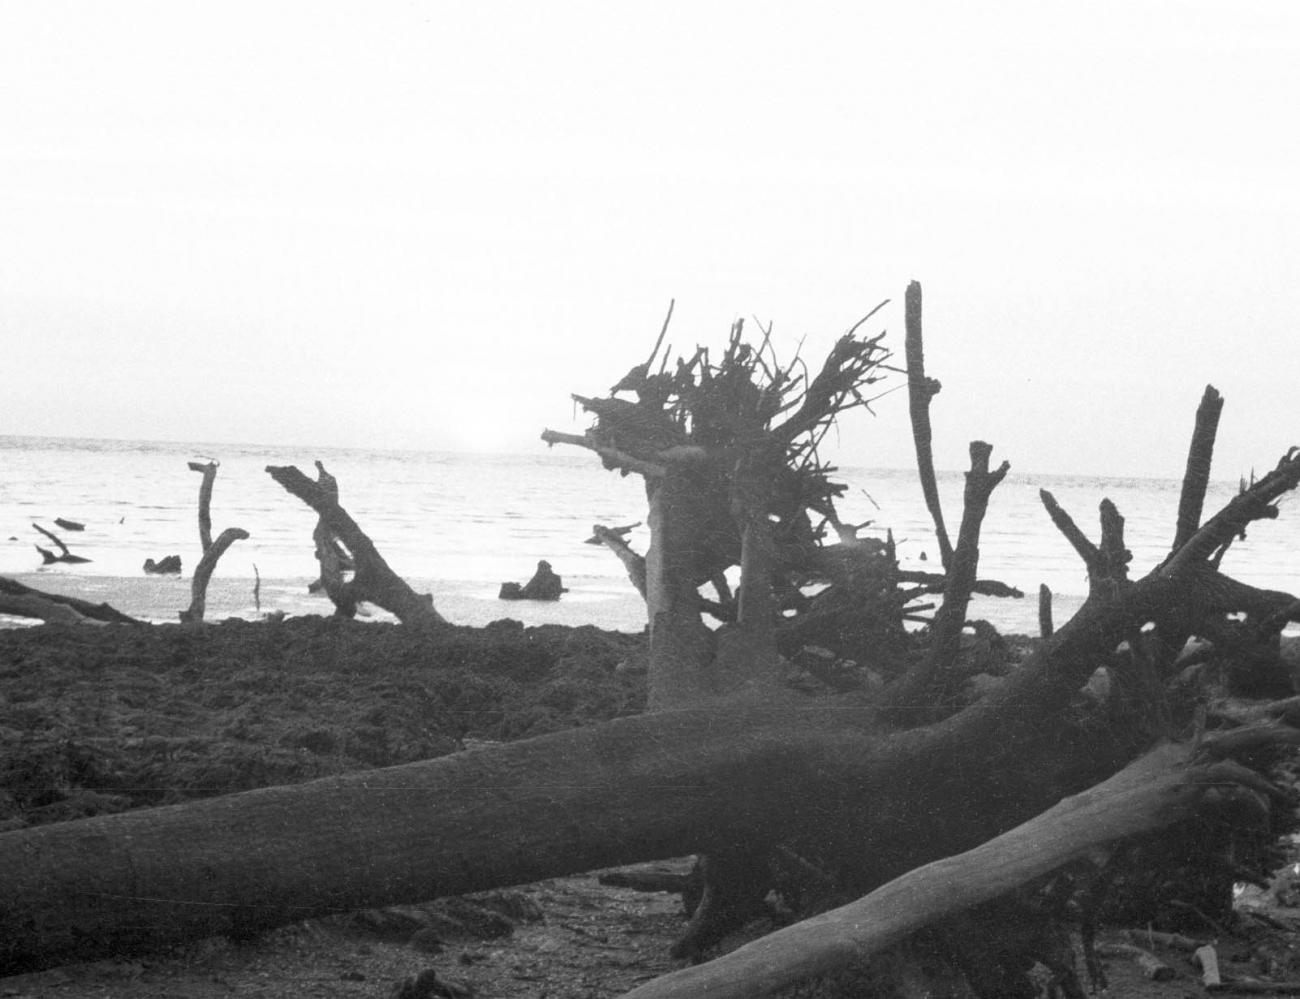 BD/133/375 - 
Aangespoeld hout van ontwortelde bomen aan het strand
